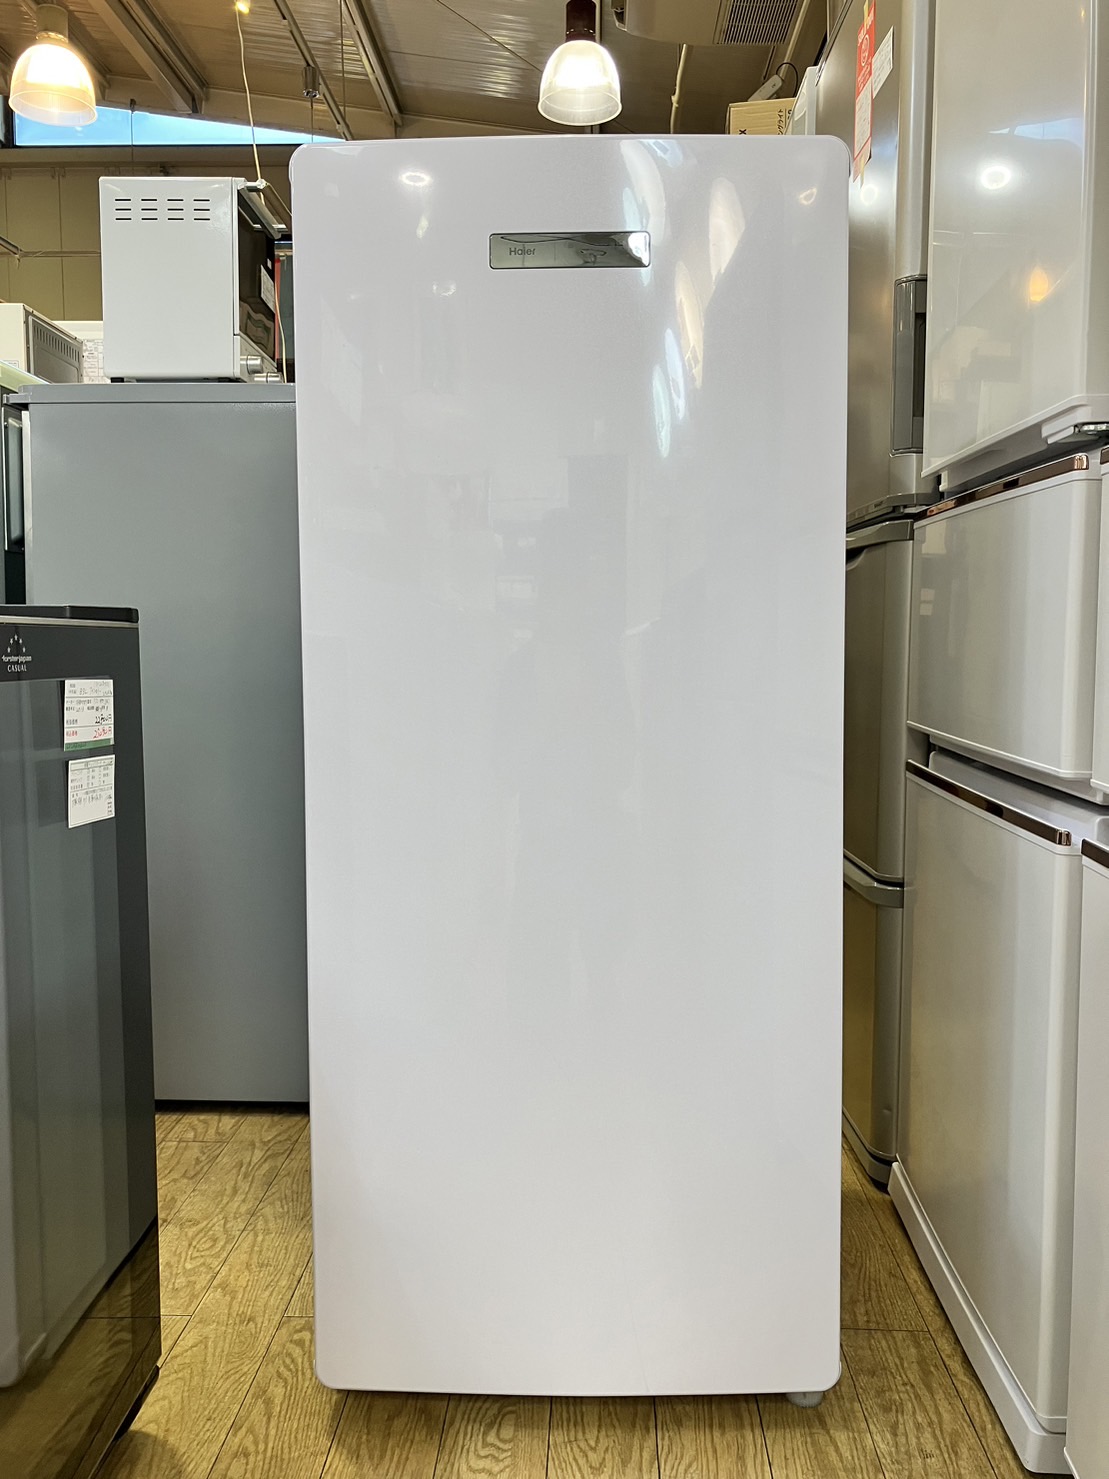 ハイアール 1ドア冷凍庫 2020年製 JF-NUF138B - キッチン家電